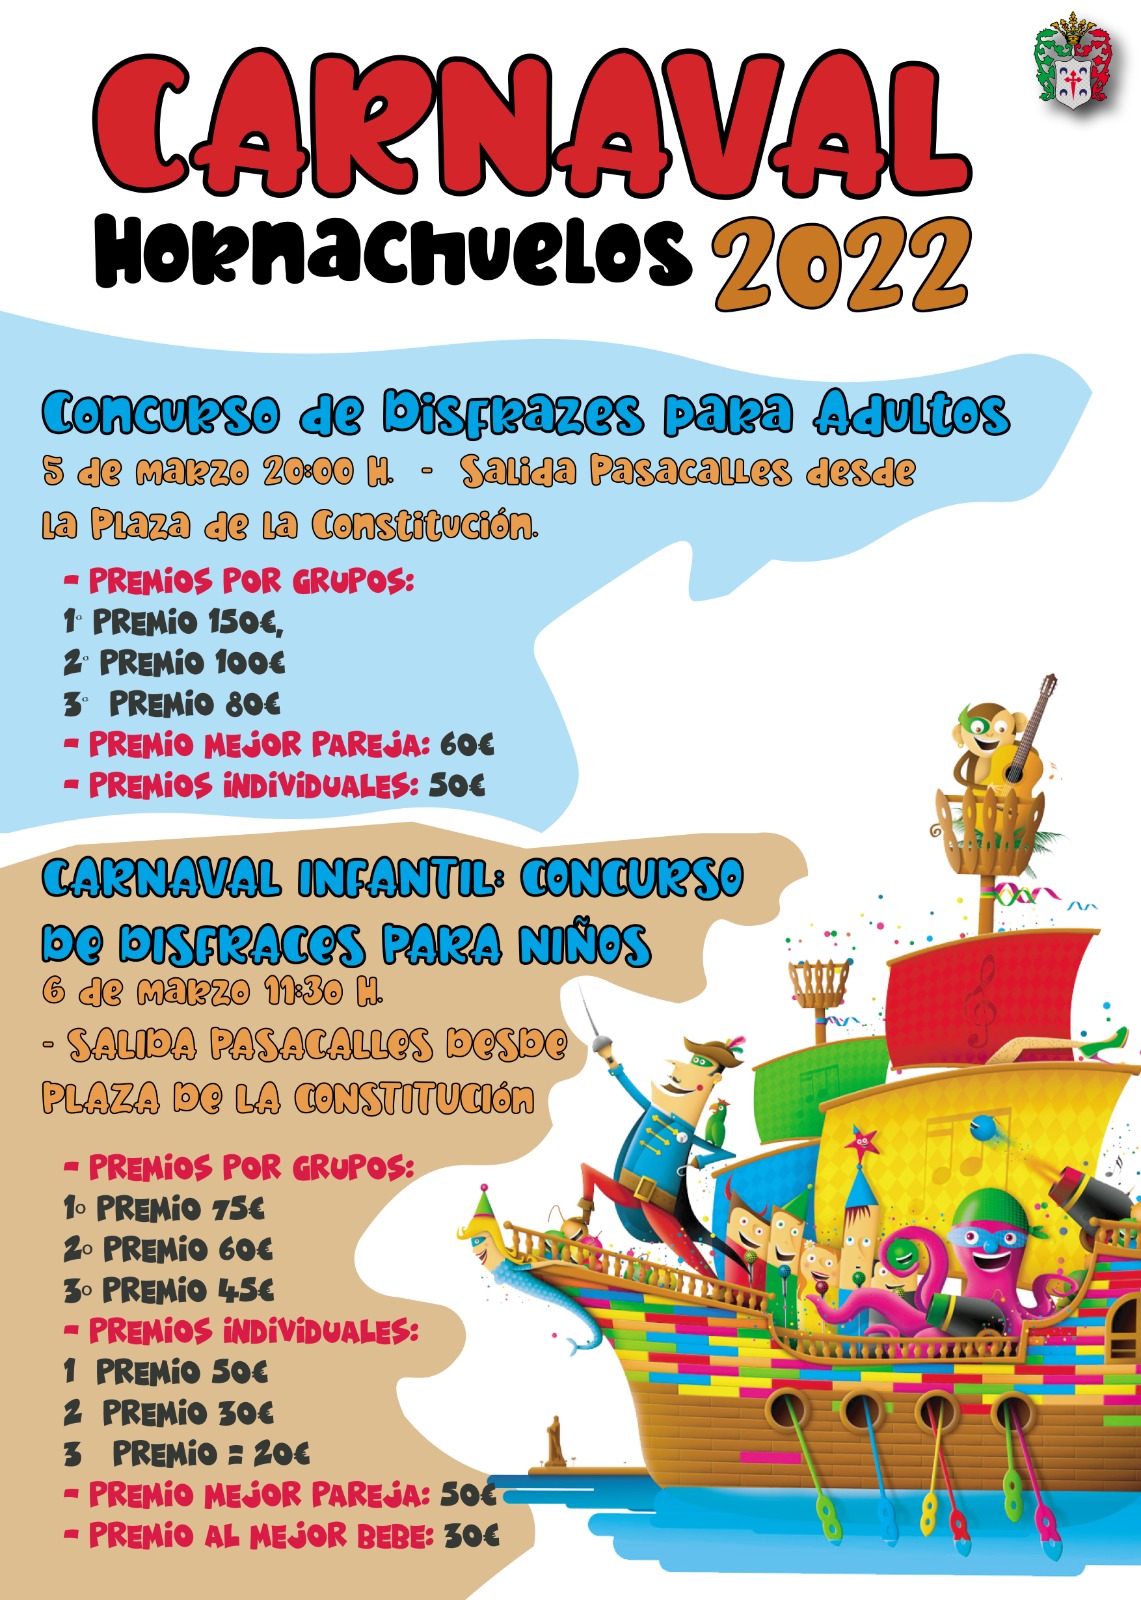 Carnaval de Hornachuelos 2022